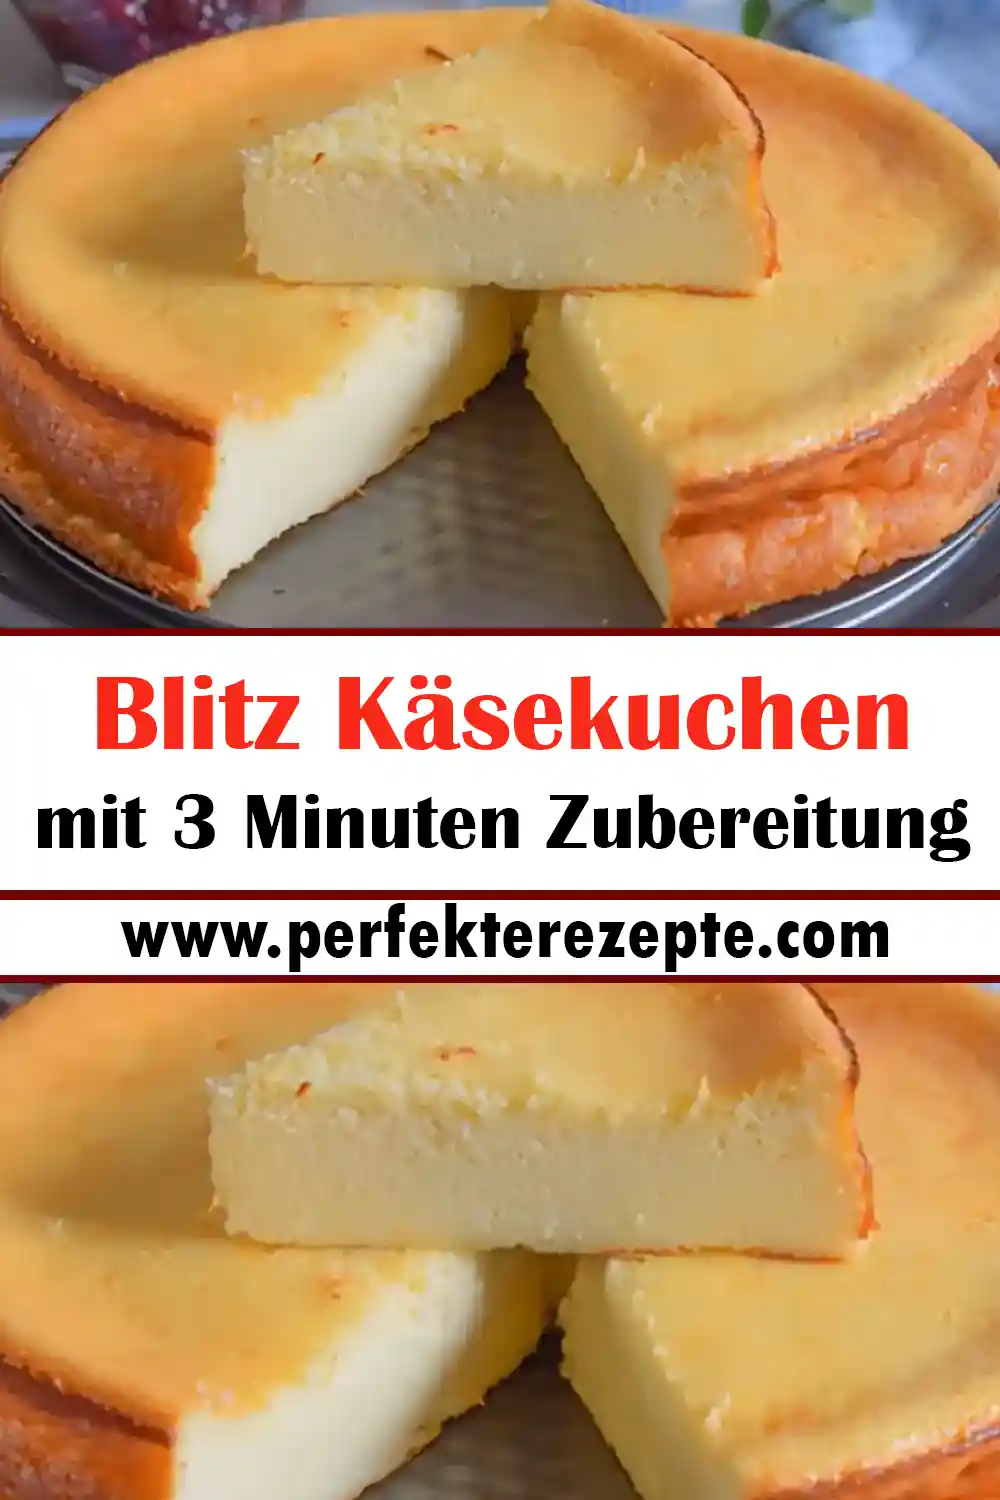 Blitz Käsekuchen Rezept mit 3 Minuten Zubereitung